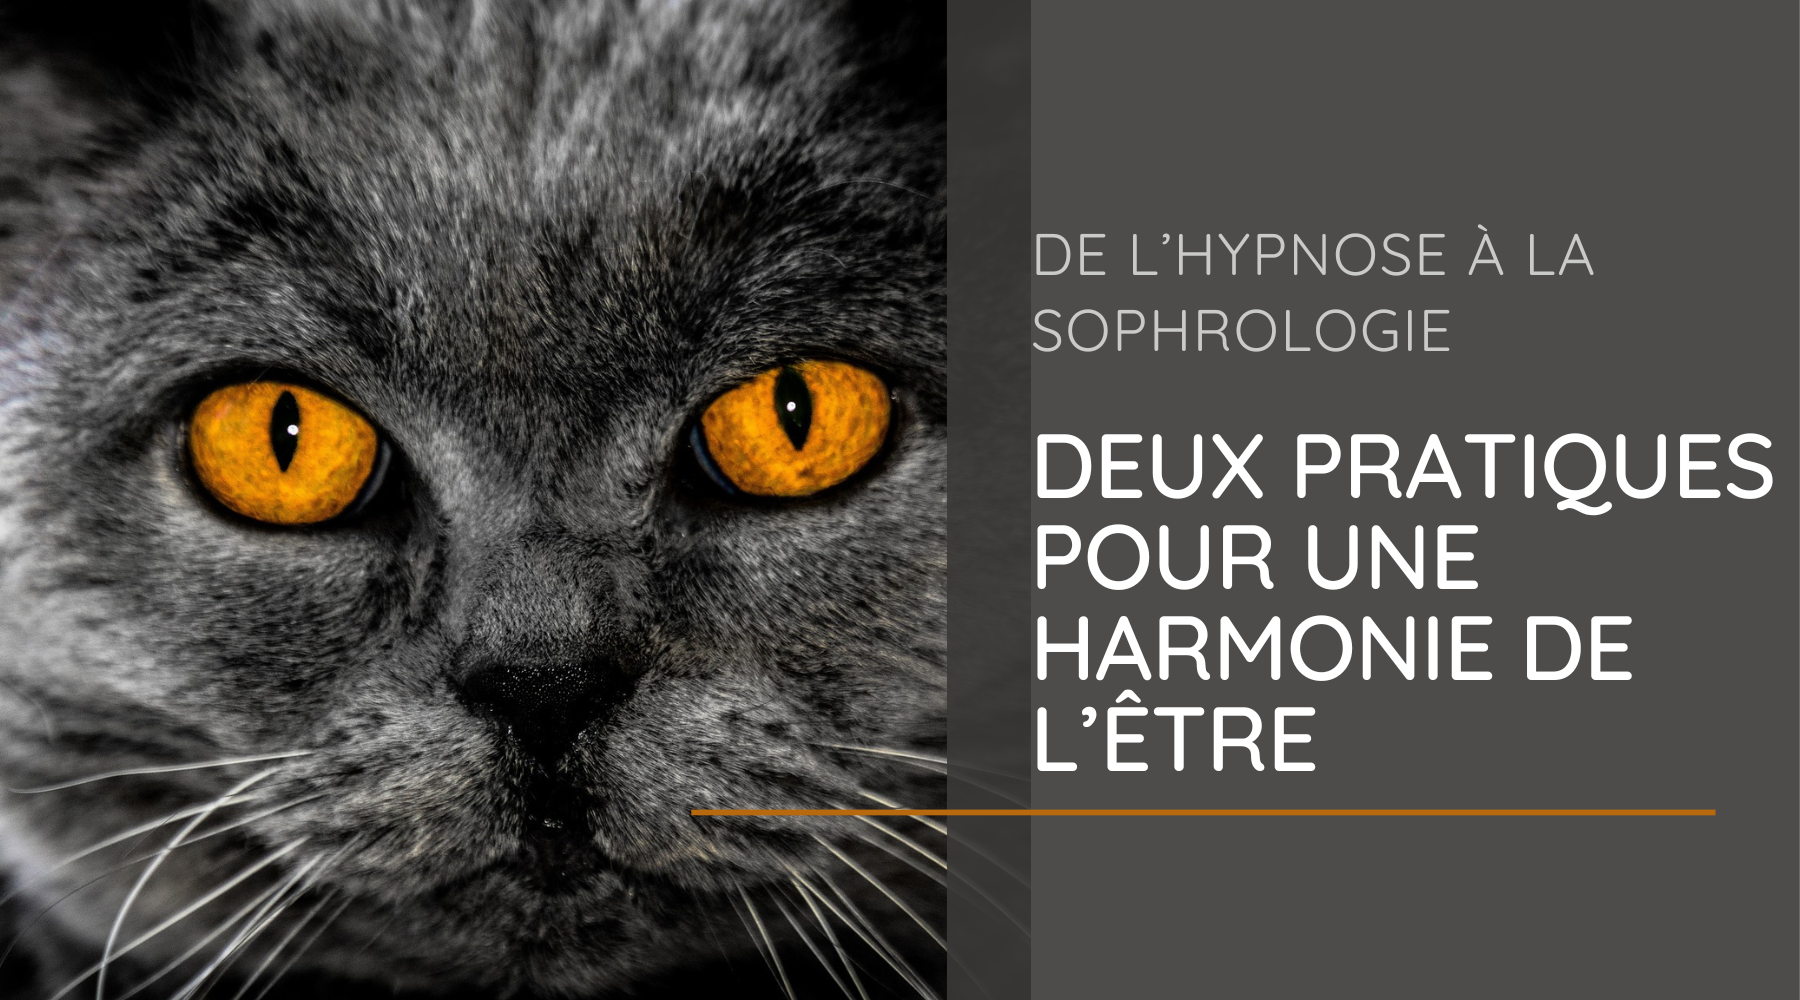 De l’hypnose à la sophrologie - Deux pratiques pour une harmonie de l’Être